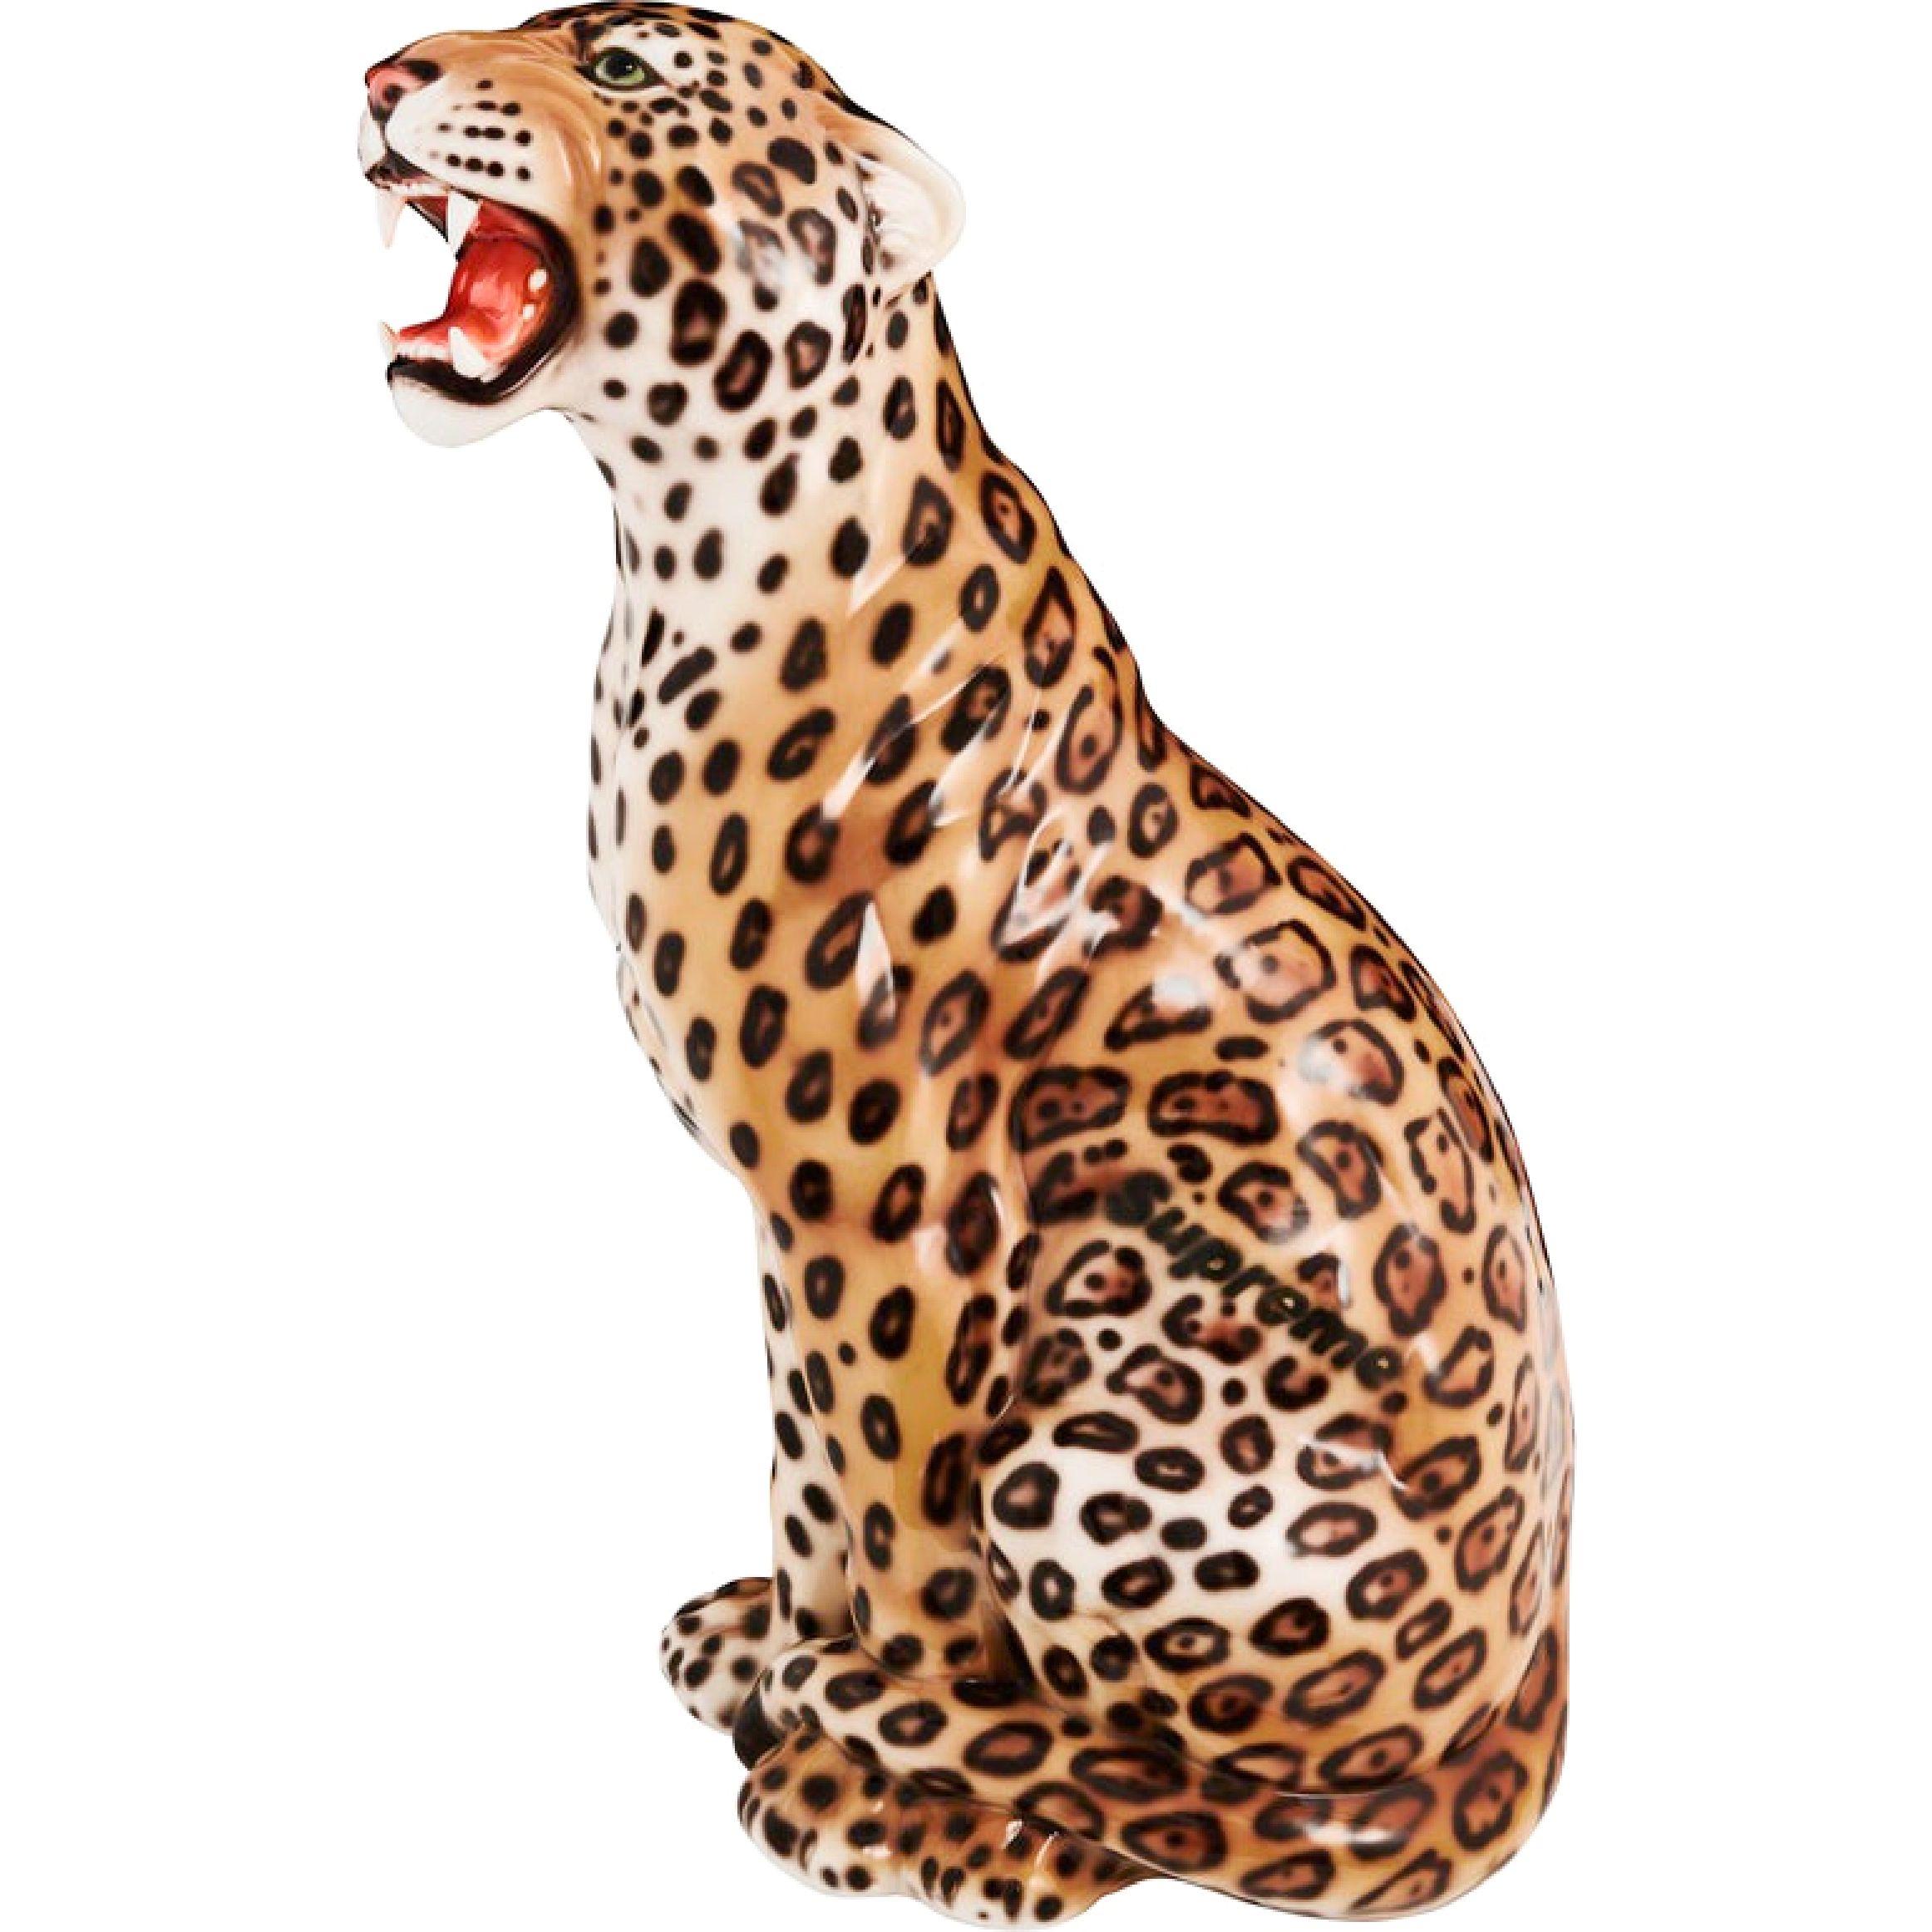 supreme leopard statue